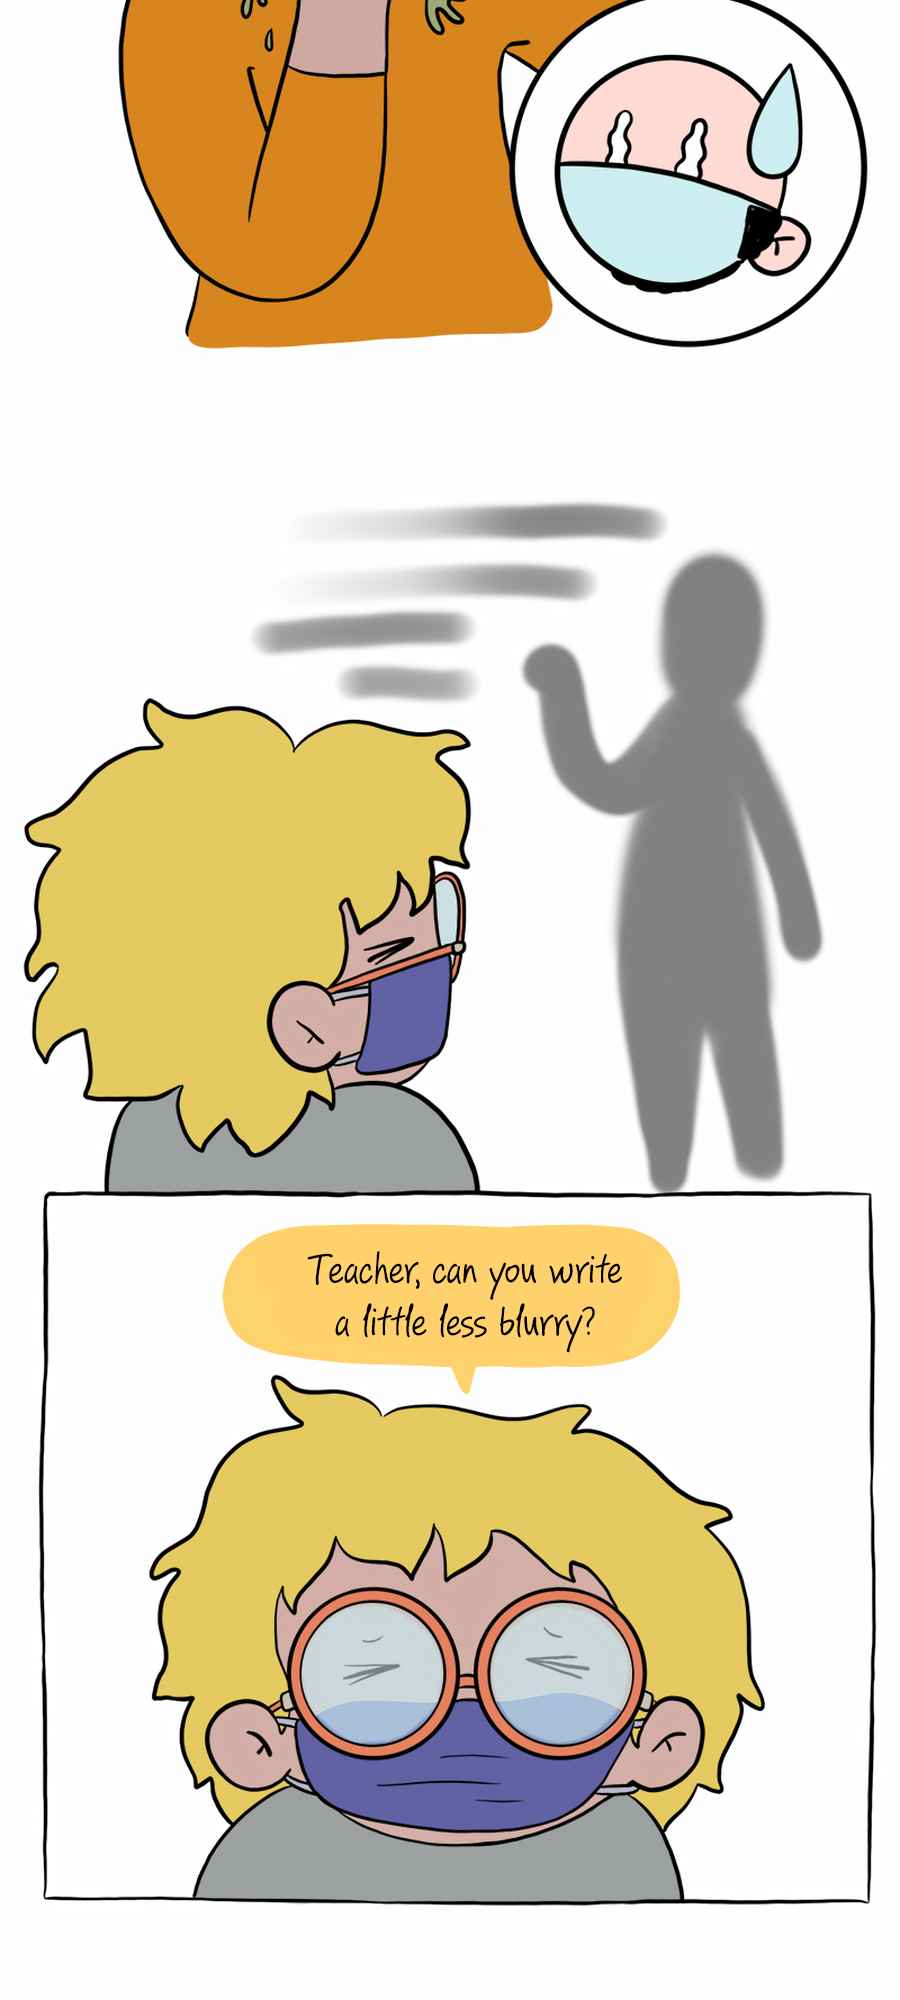 Mr. Teacher 3